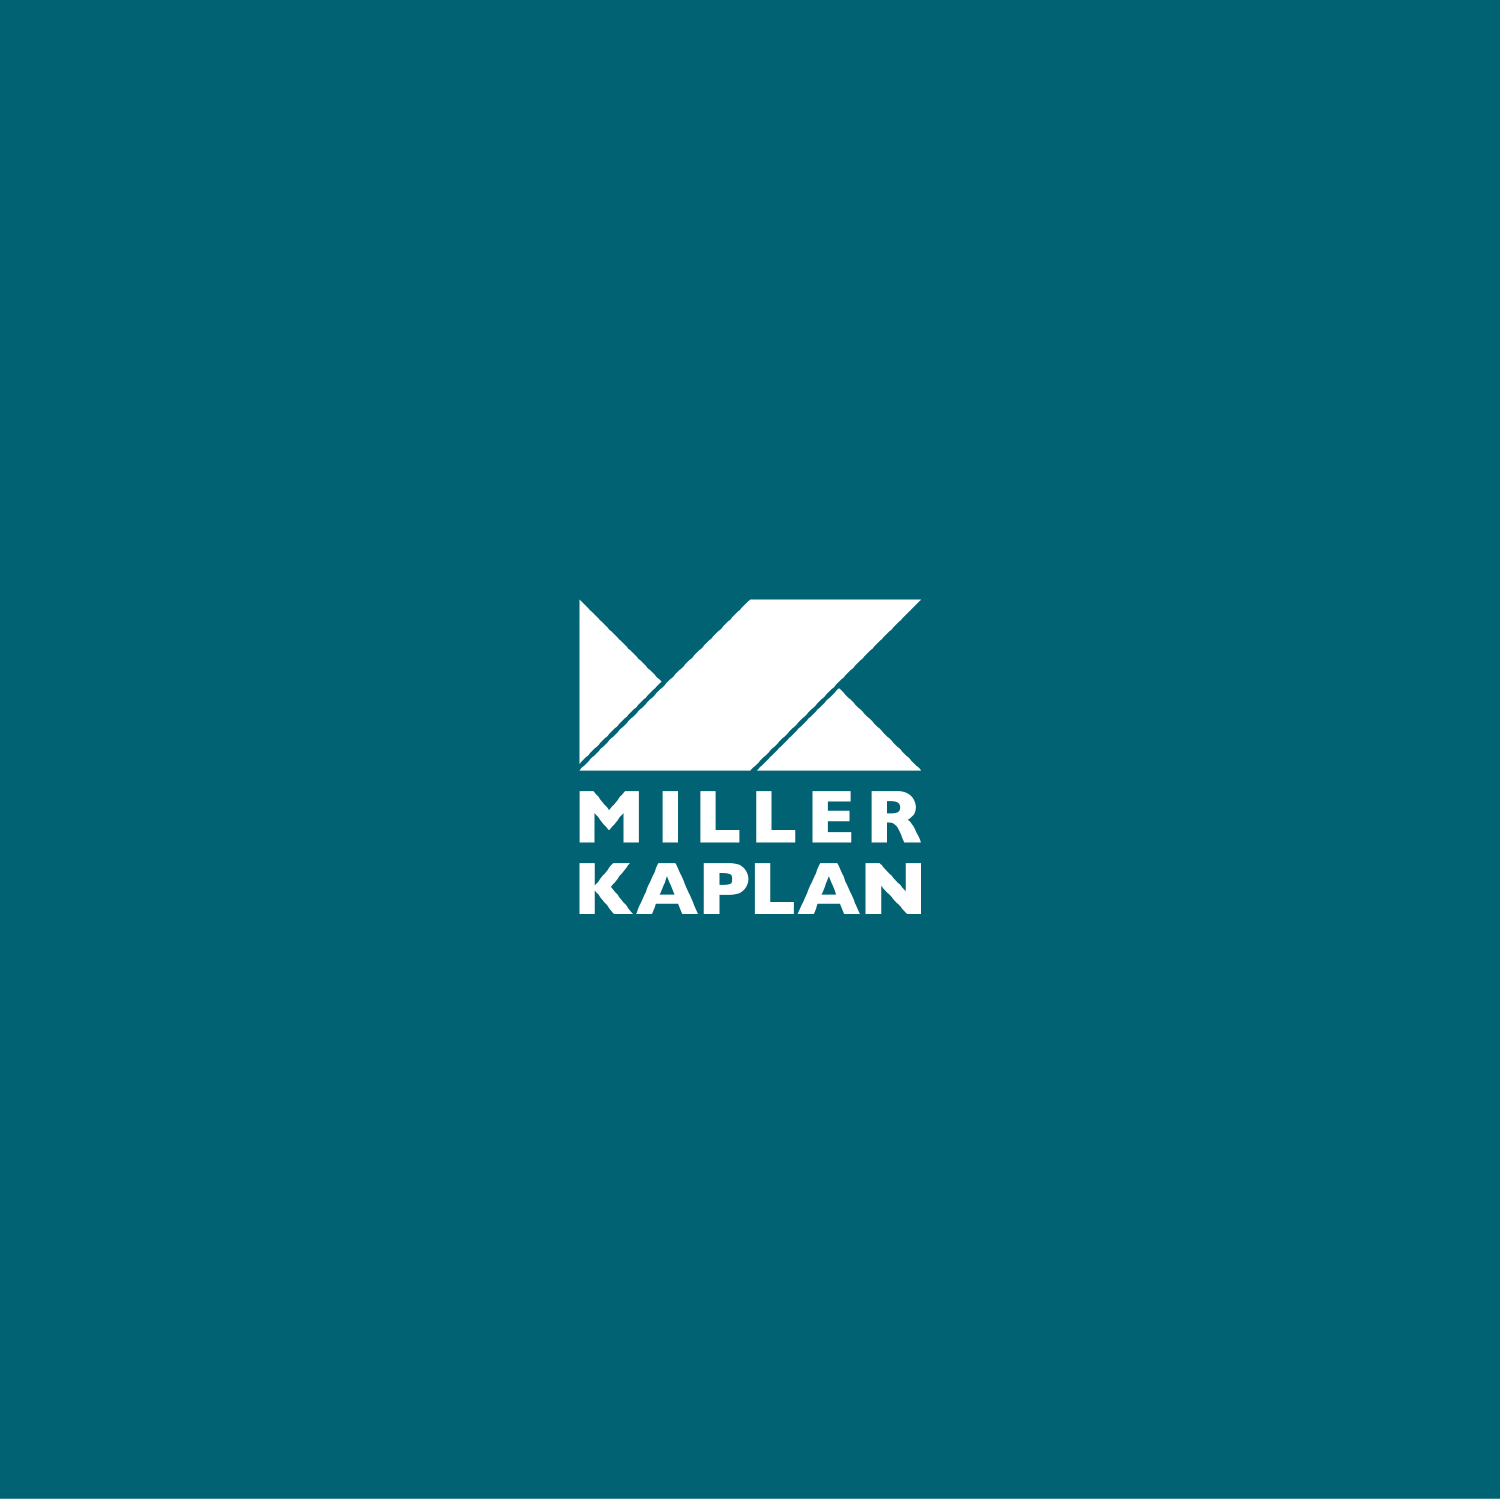 Miller Kaplan Unveils New Branding